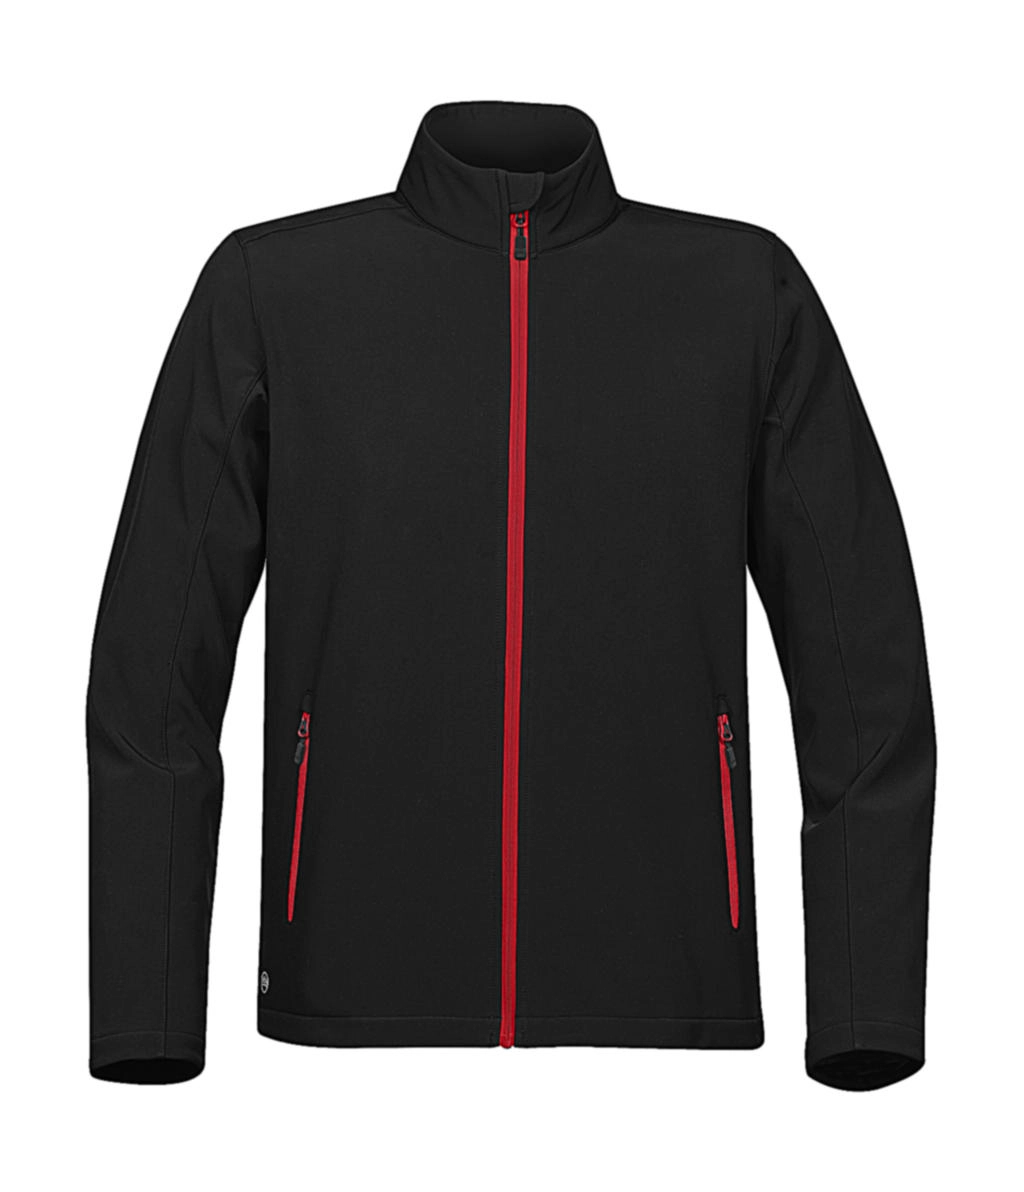 Orbiter Softshell Jacket zum Besticken und Bedrucken in der Farbe Black/Bright Red mit Ihren Logo, Schriftzug oder Motiv.